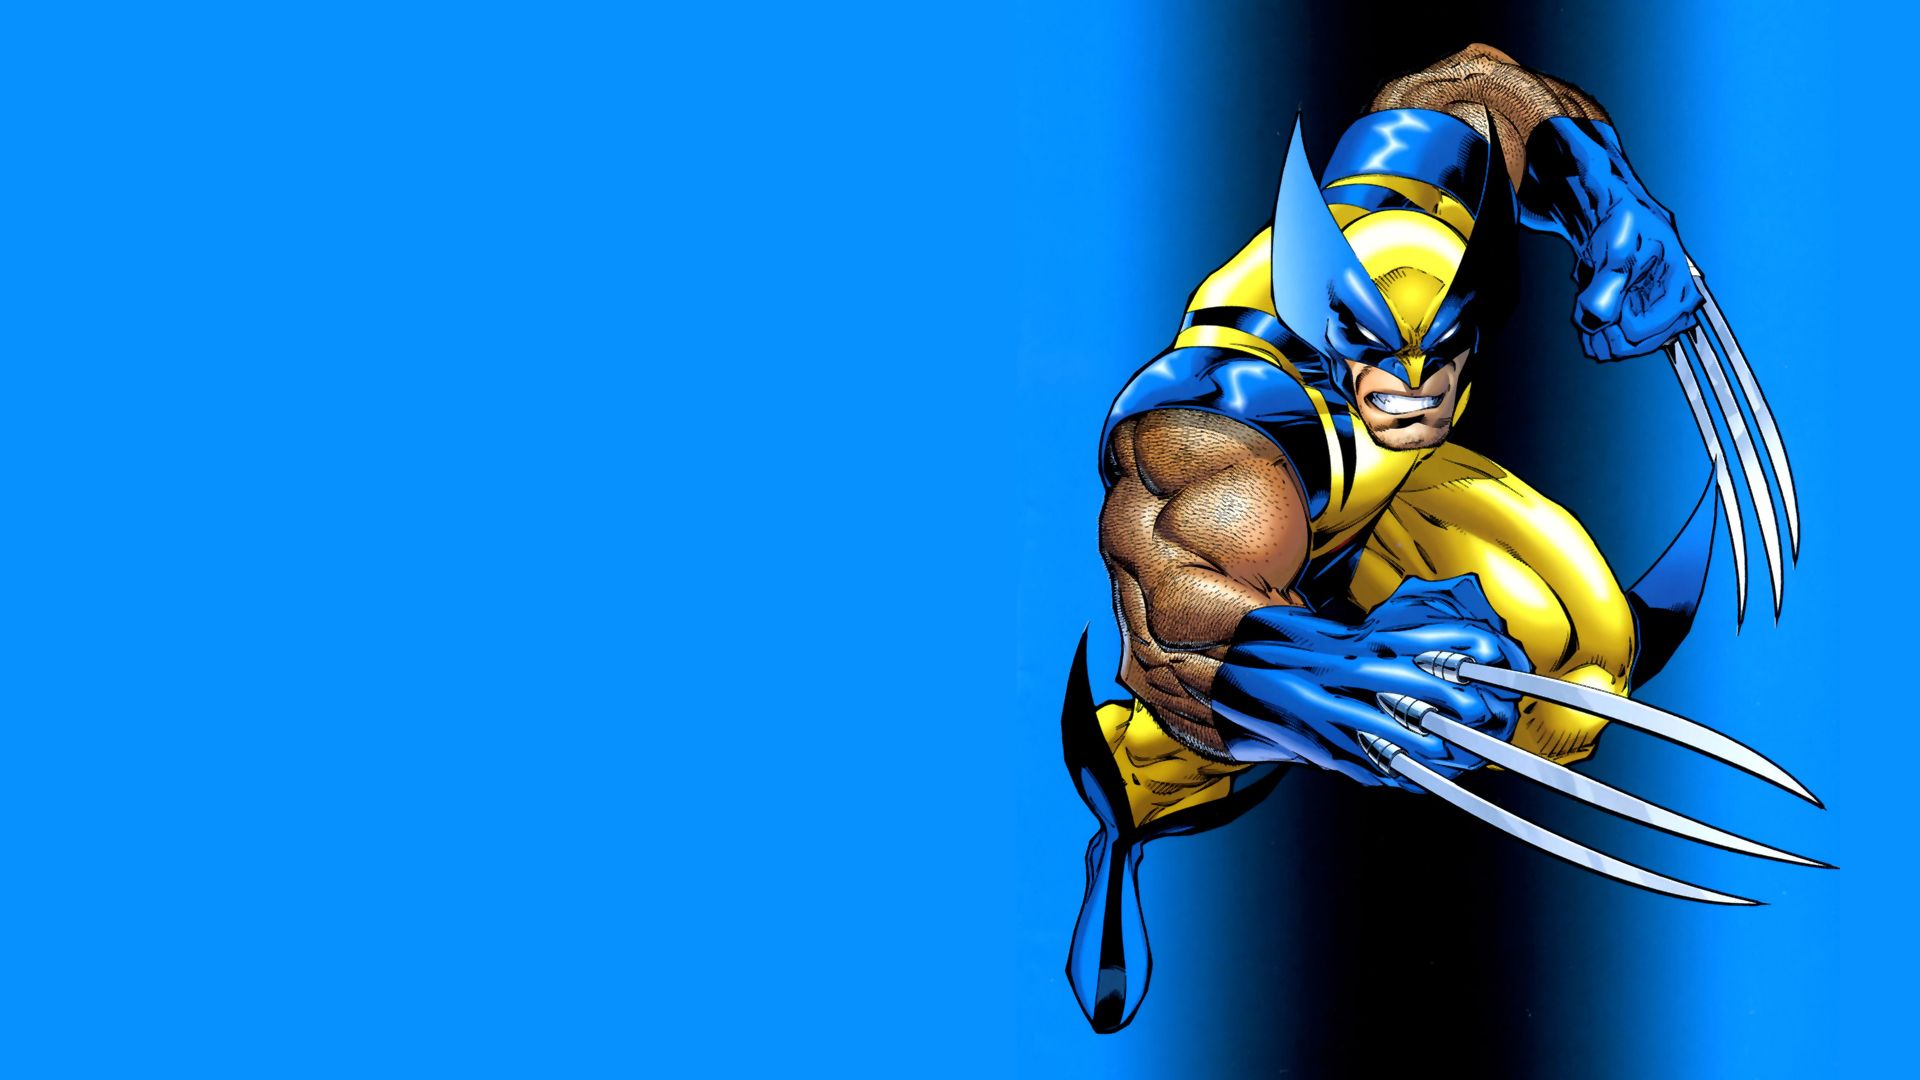 Wolverine Computer Wallpapers, Desktop Backgrounds | 1600x1200 ...